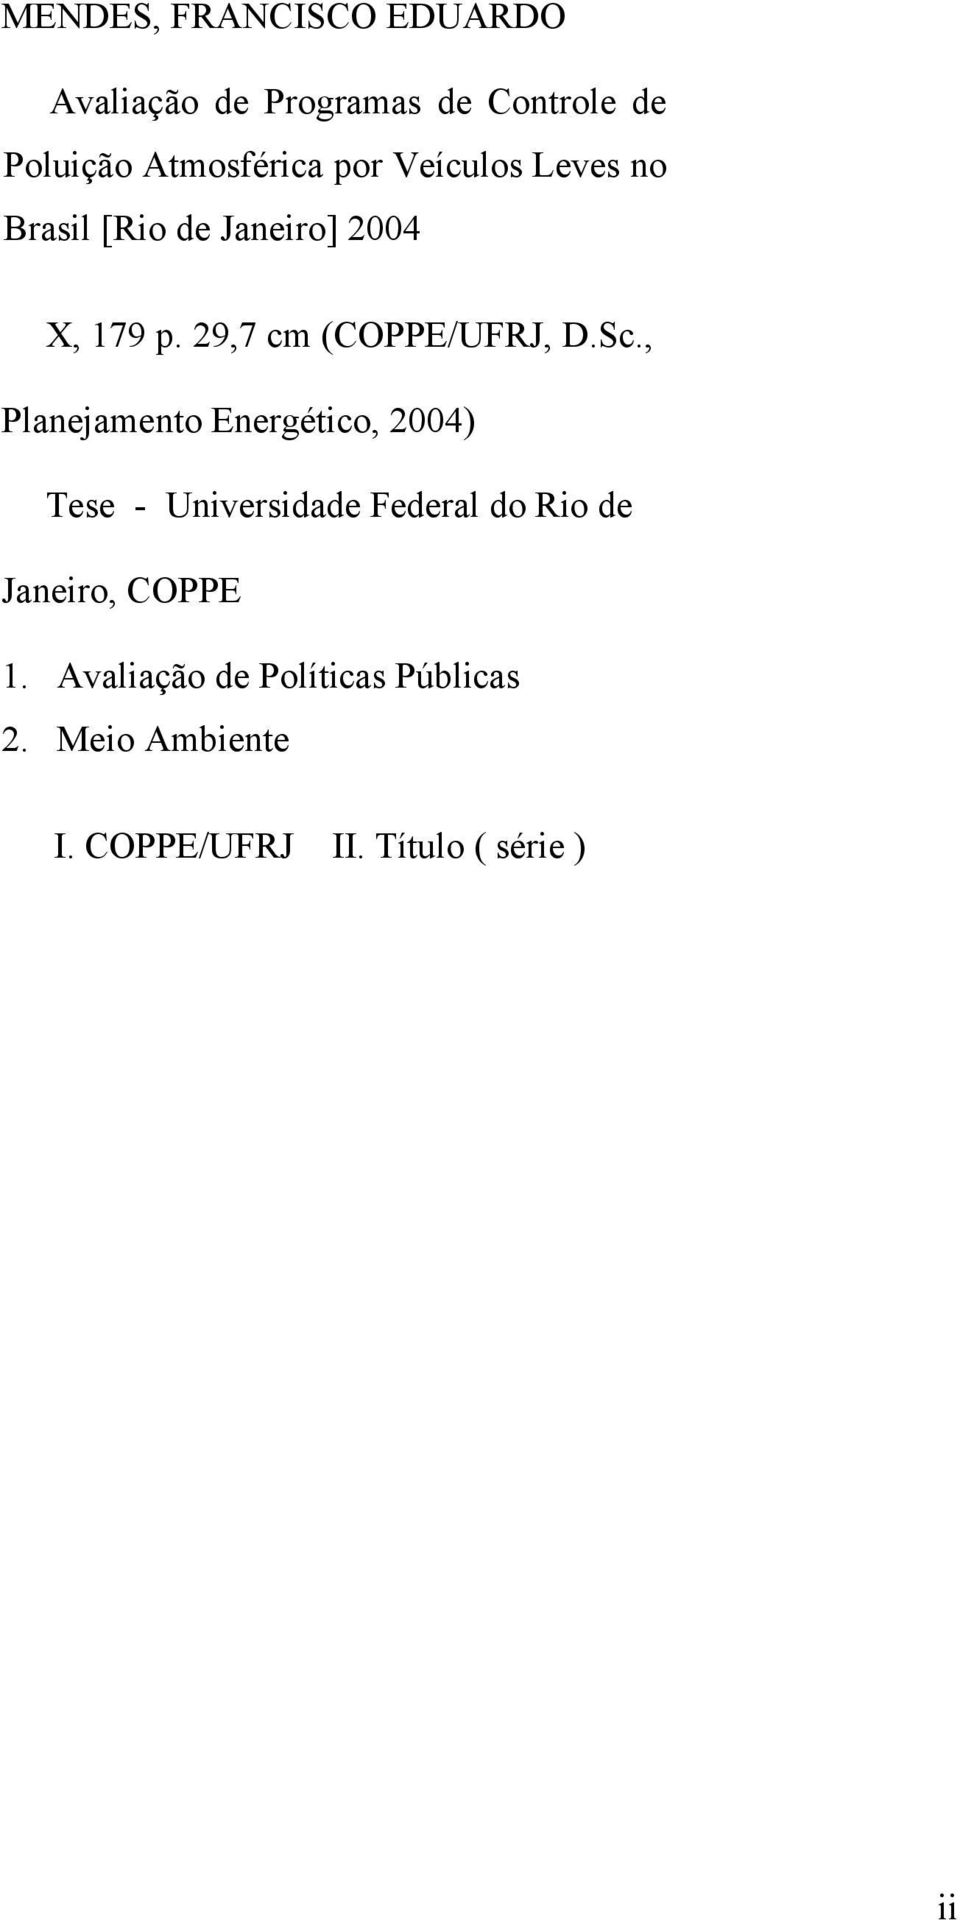 , Planejamento Energético, 2004) Tese - Universidade Federal do Rio de Janeiro, COPPE